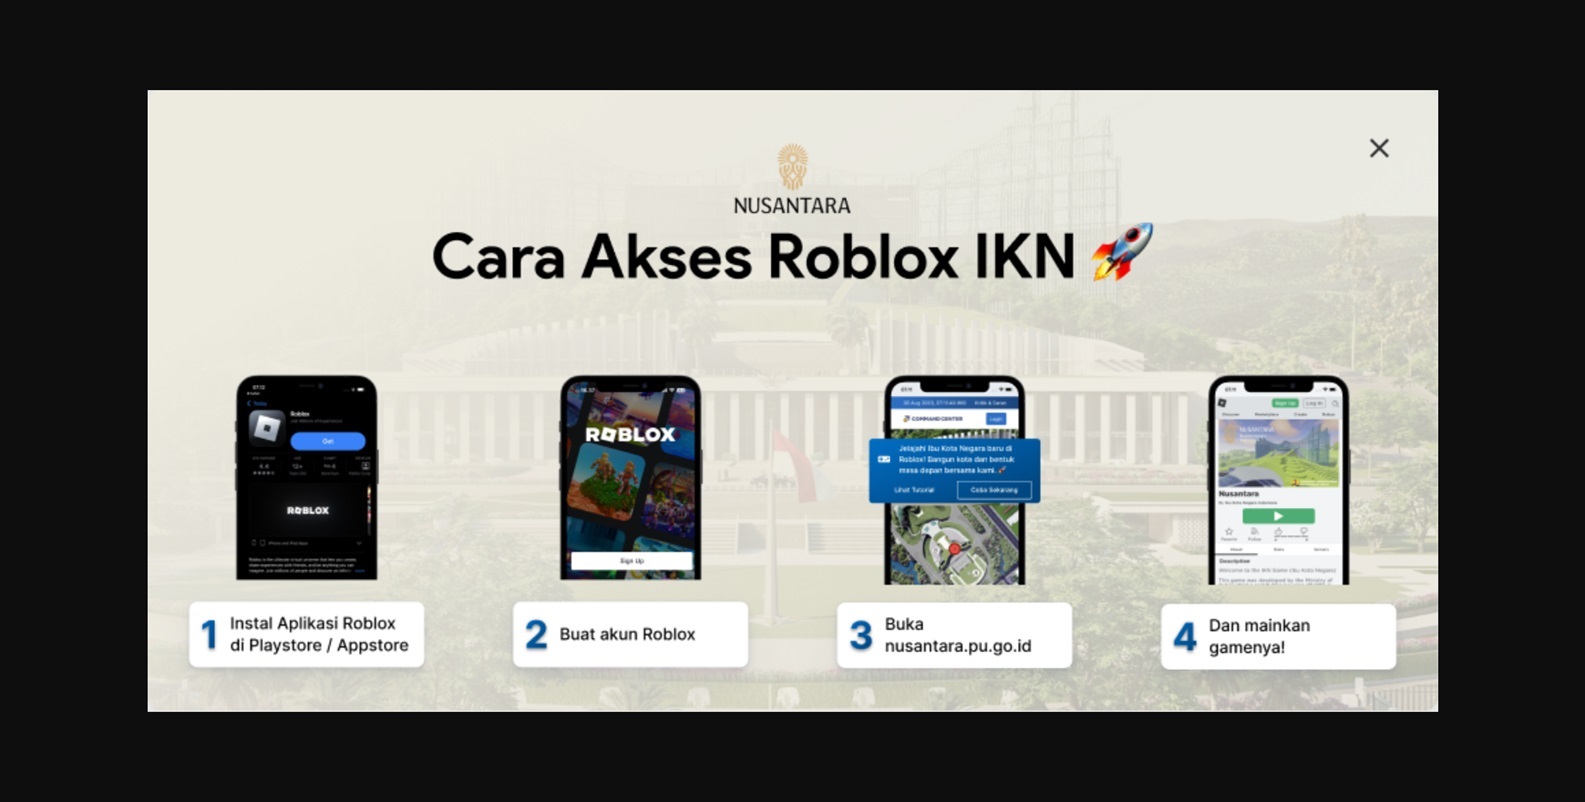 Link Akses Game Roblox IKN: Bisa Dimainkan di Android, iOS dan Komputer PC